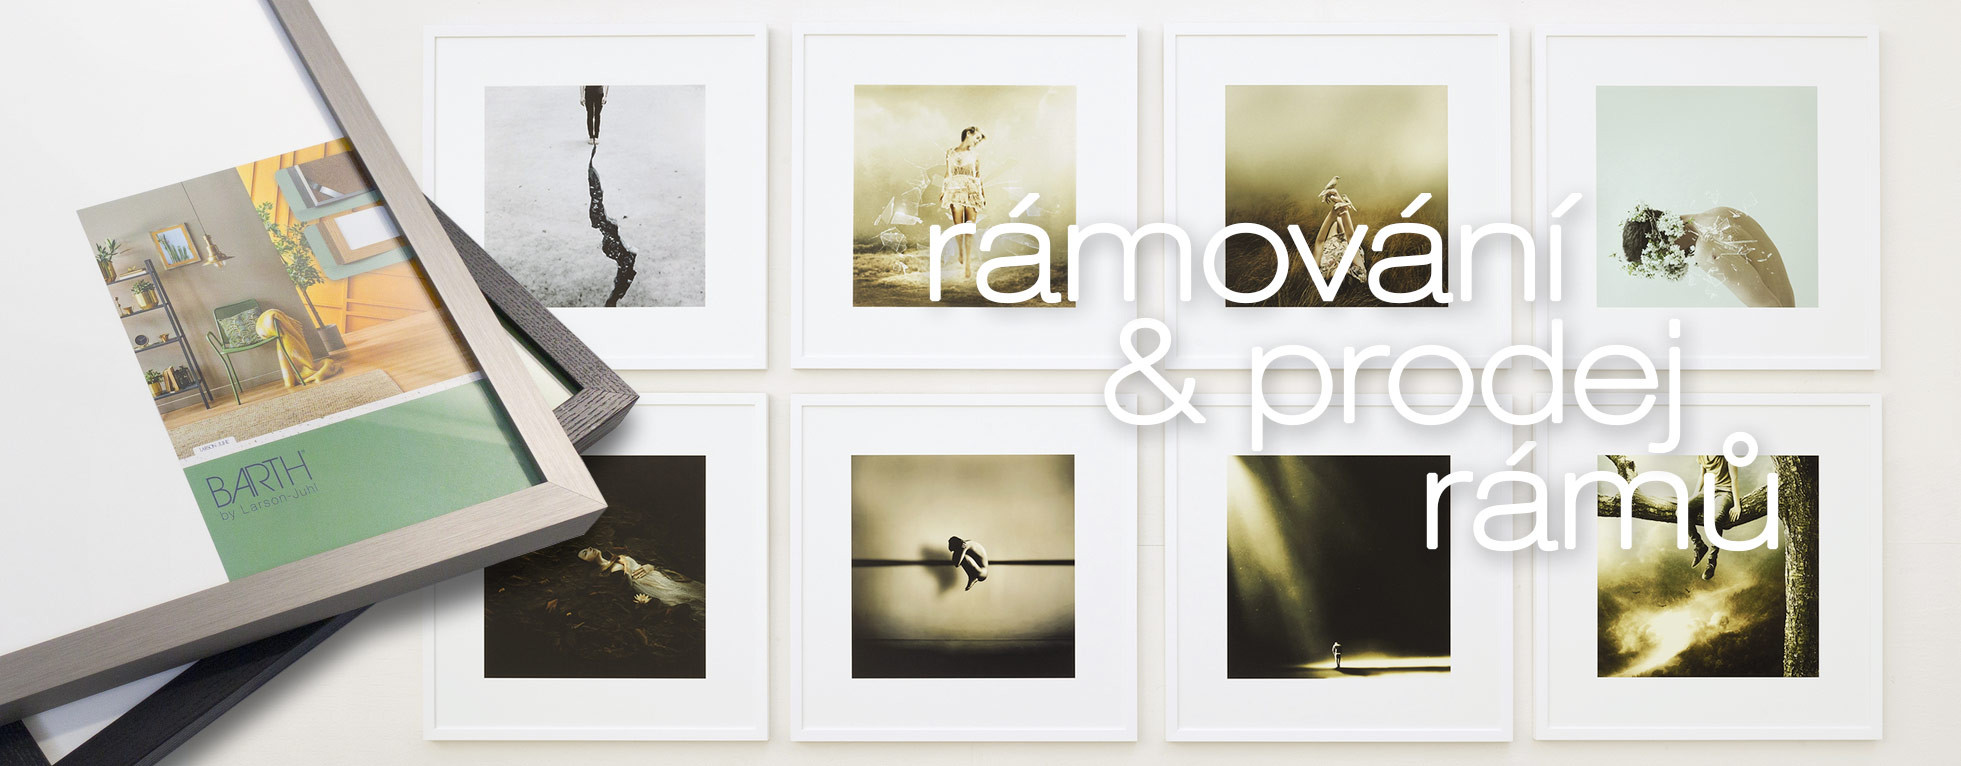 Rámování fotografií | rámy | Barth | rámy Nielsen a Larson Juhl